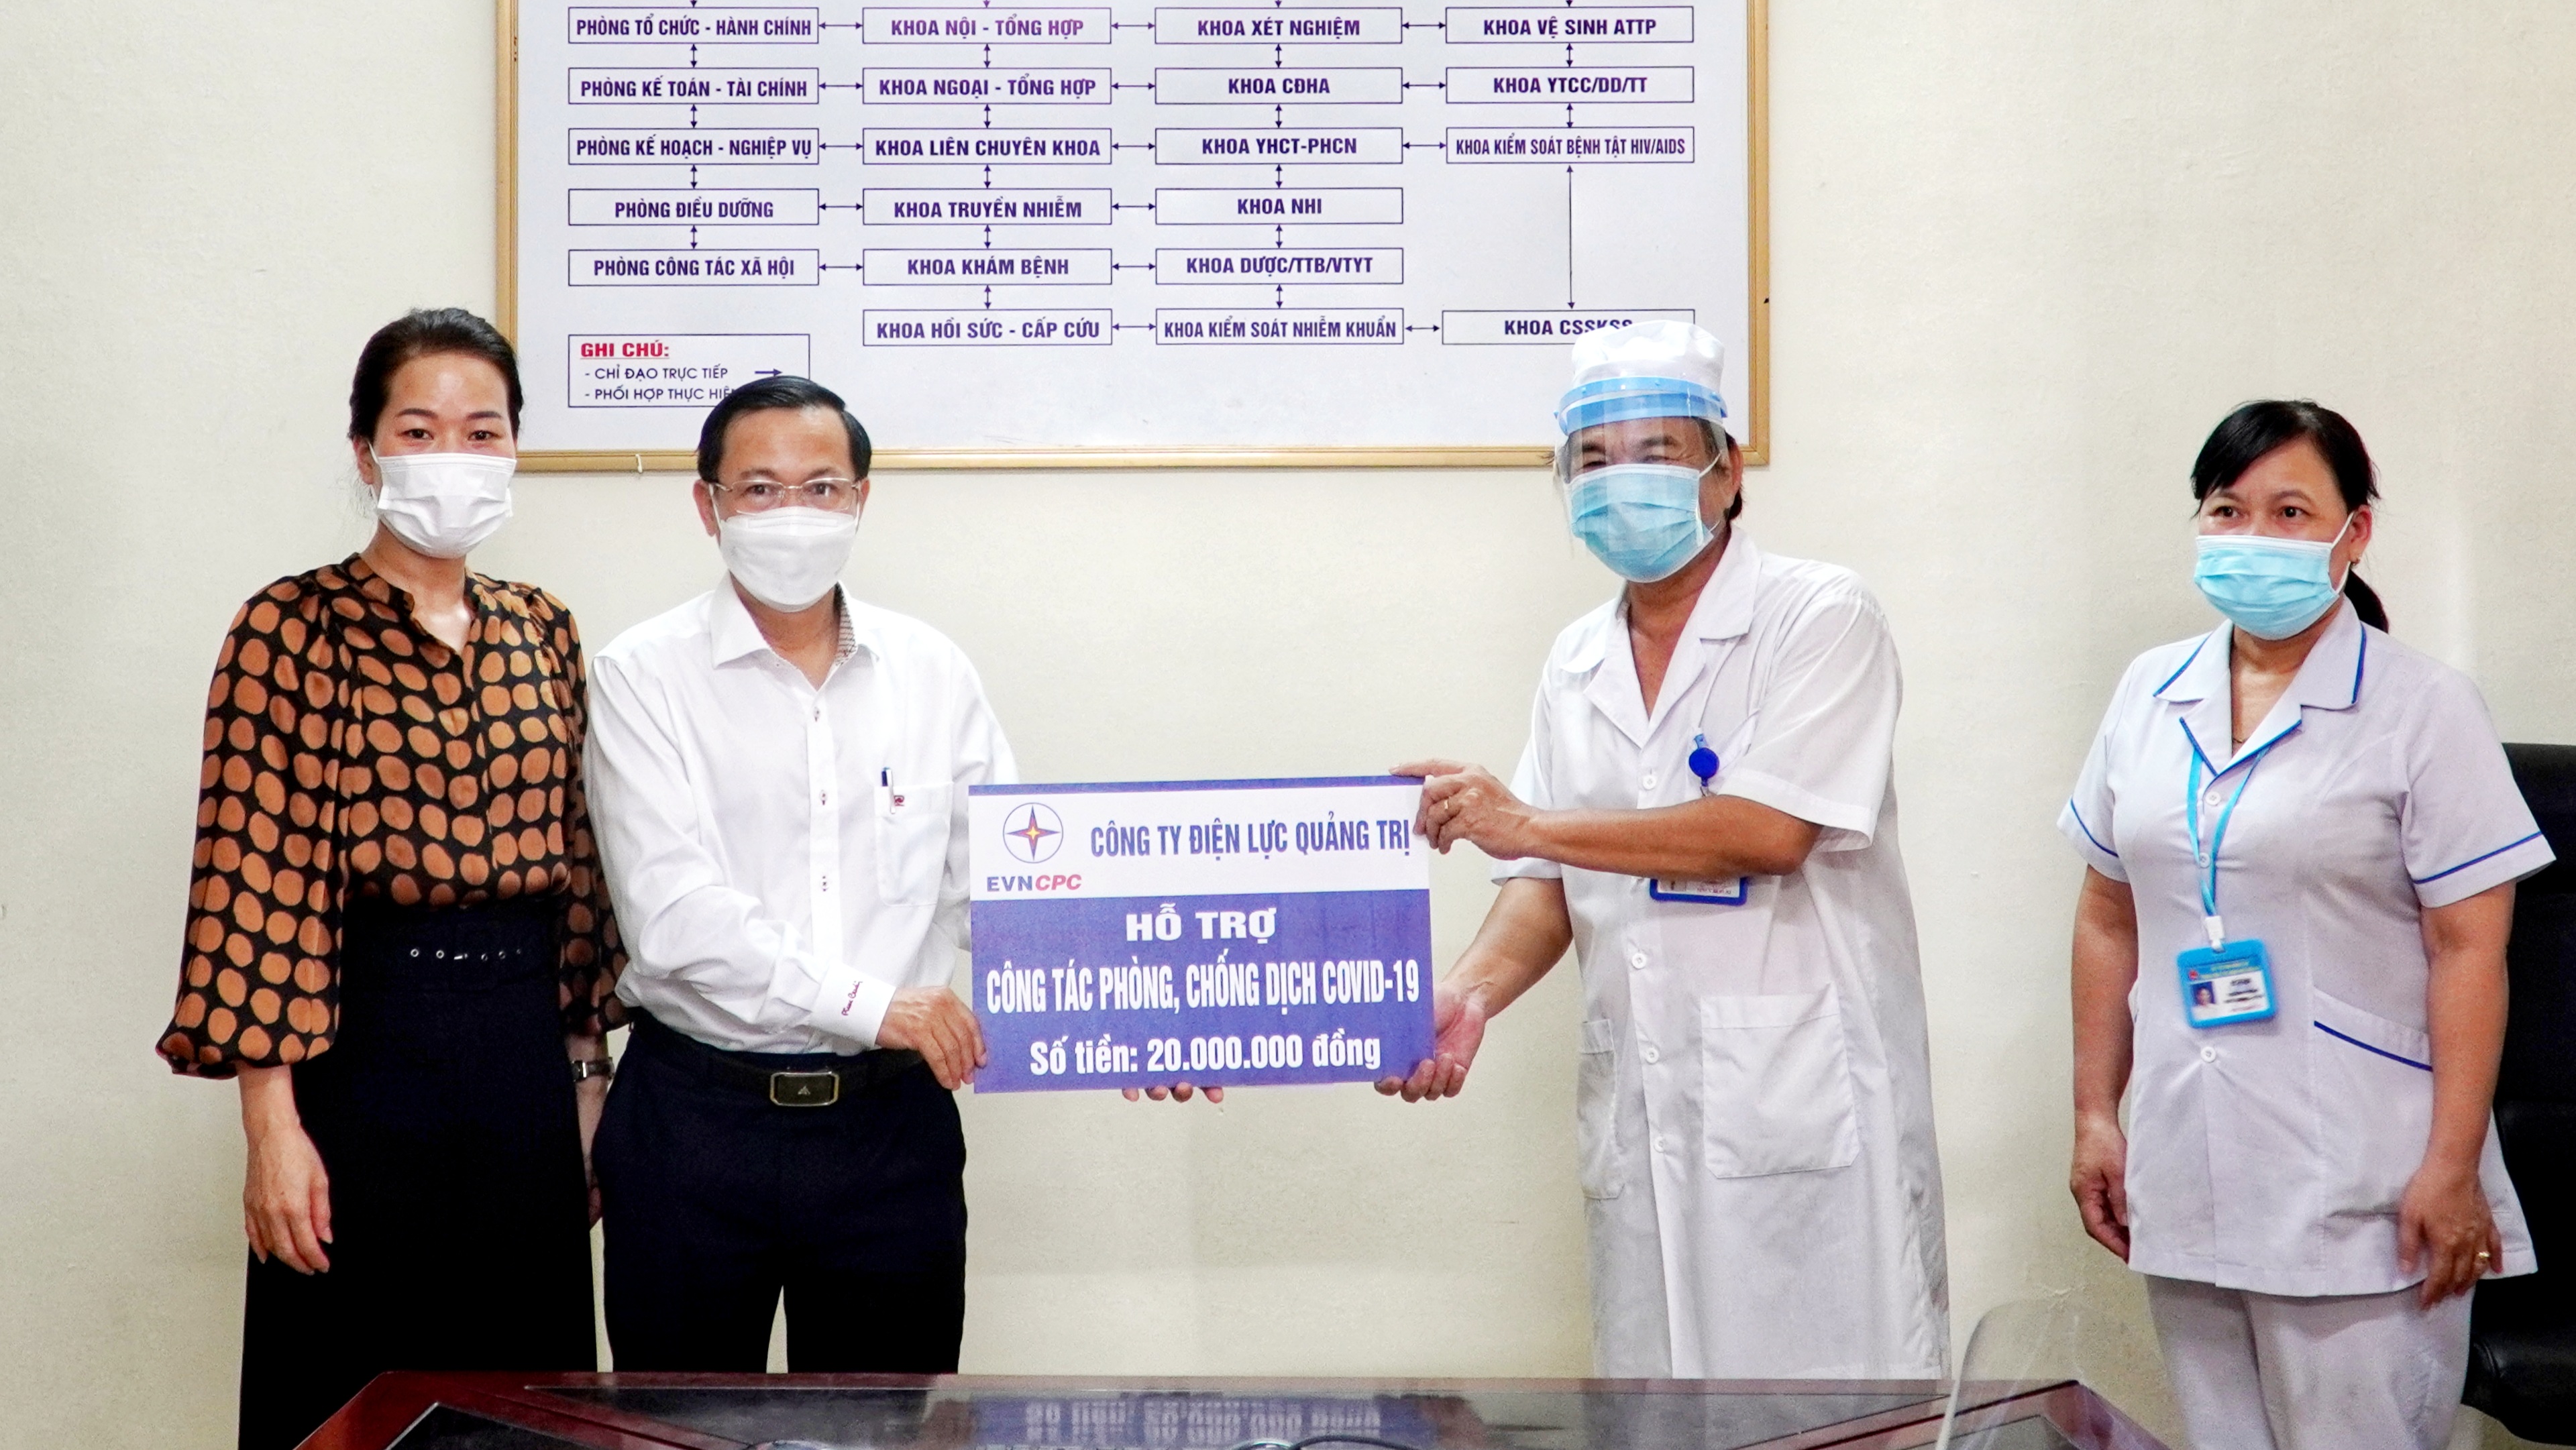 Ông Phan Văn Vĩnh (Giám đốc Công ty Điện lực Quảng Trị) tặng 20 triệu đồng cho Trung tâm Y tế TP.Đông Hà chống dịch Covid-19. ẢNH: THANH LỘC